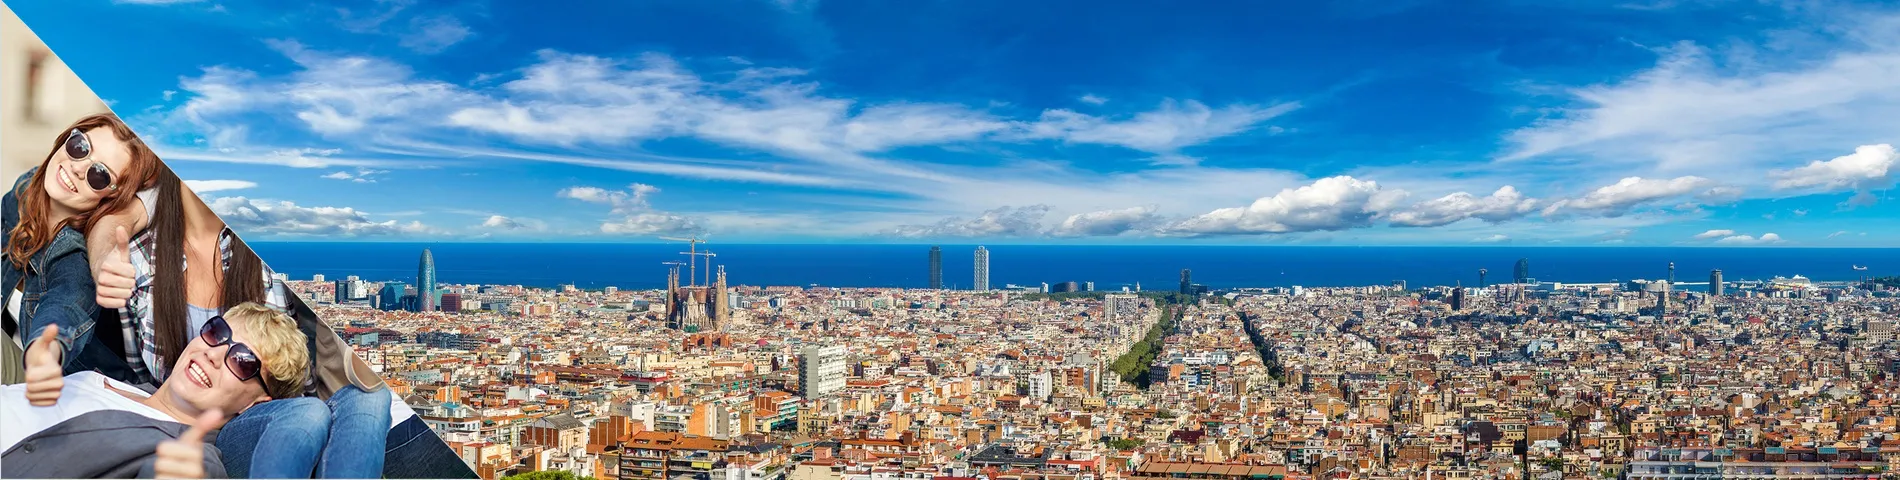 برشلونة - الرحلات المدرسية / المجموعات